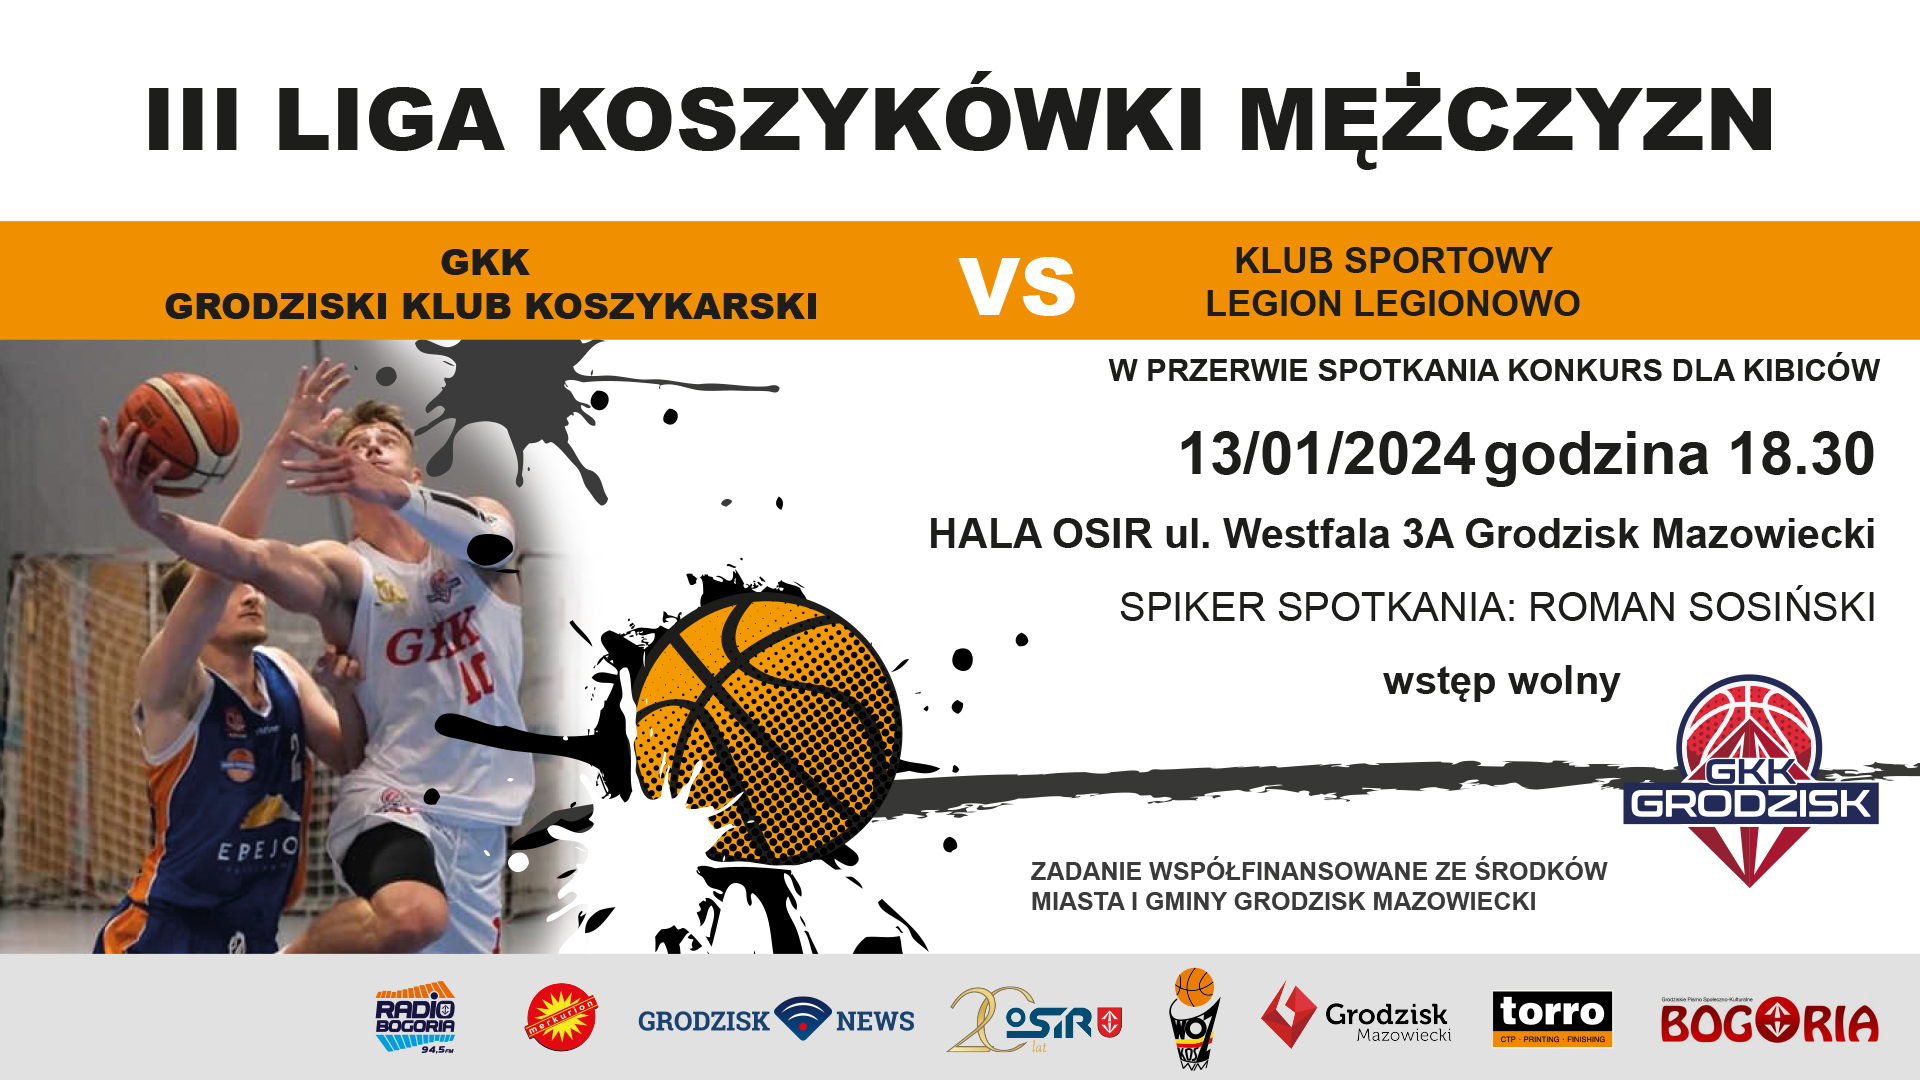 III liga koszykówki mężczyzn: GKK Grodzisk Mazowiecki vs. KS Legion Legionowo – godz. 18:30, Grodziska Hala Sportowa (ul. Westfala 3a)